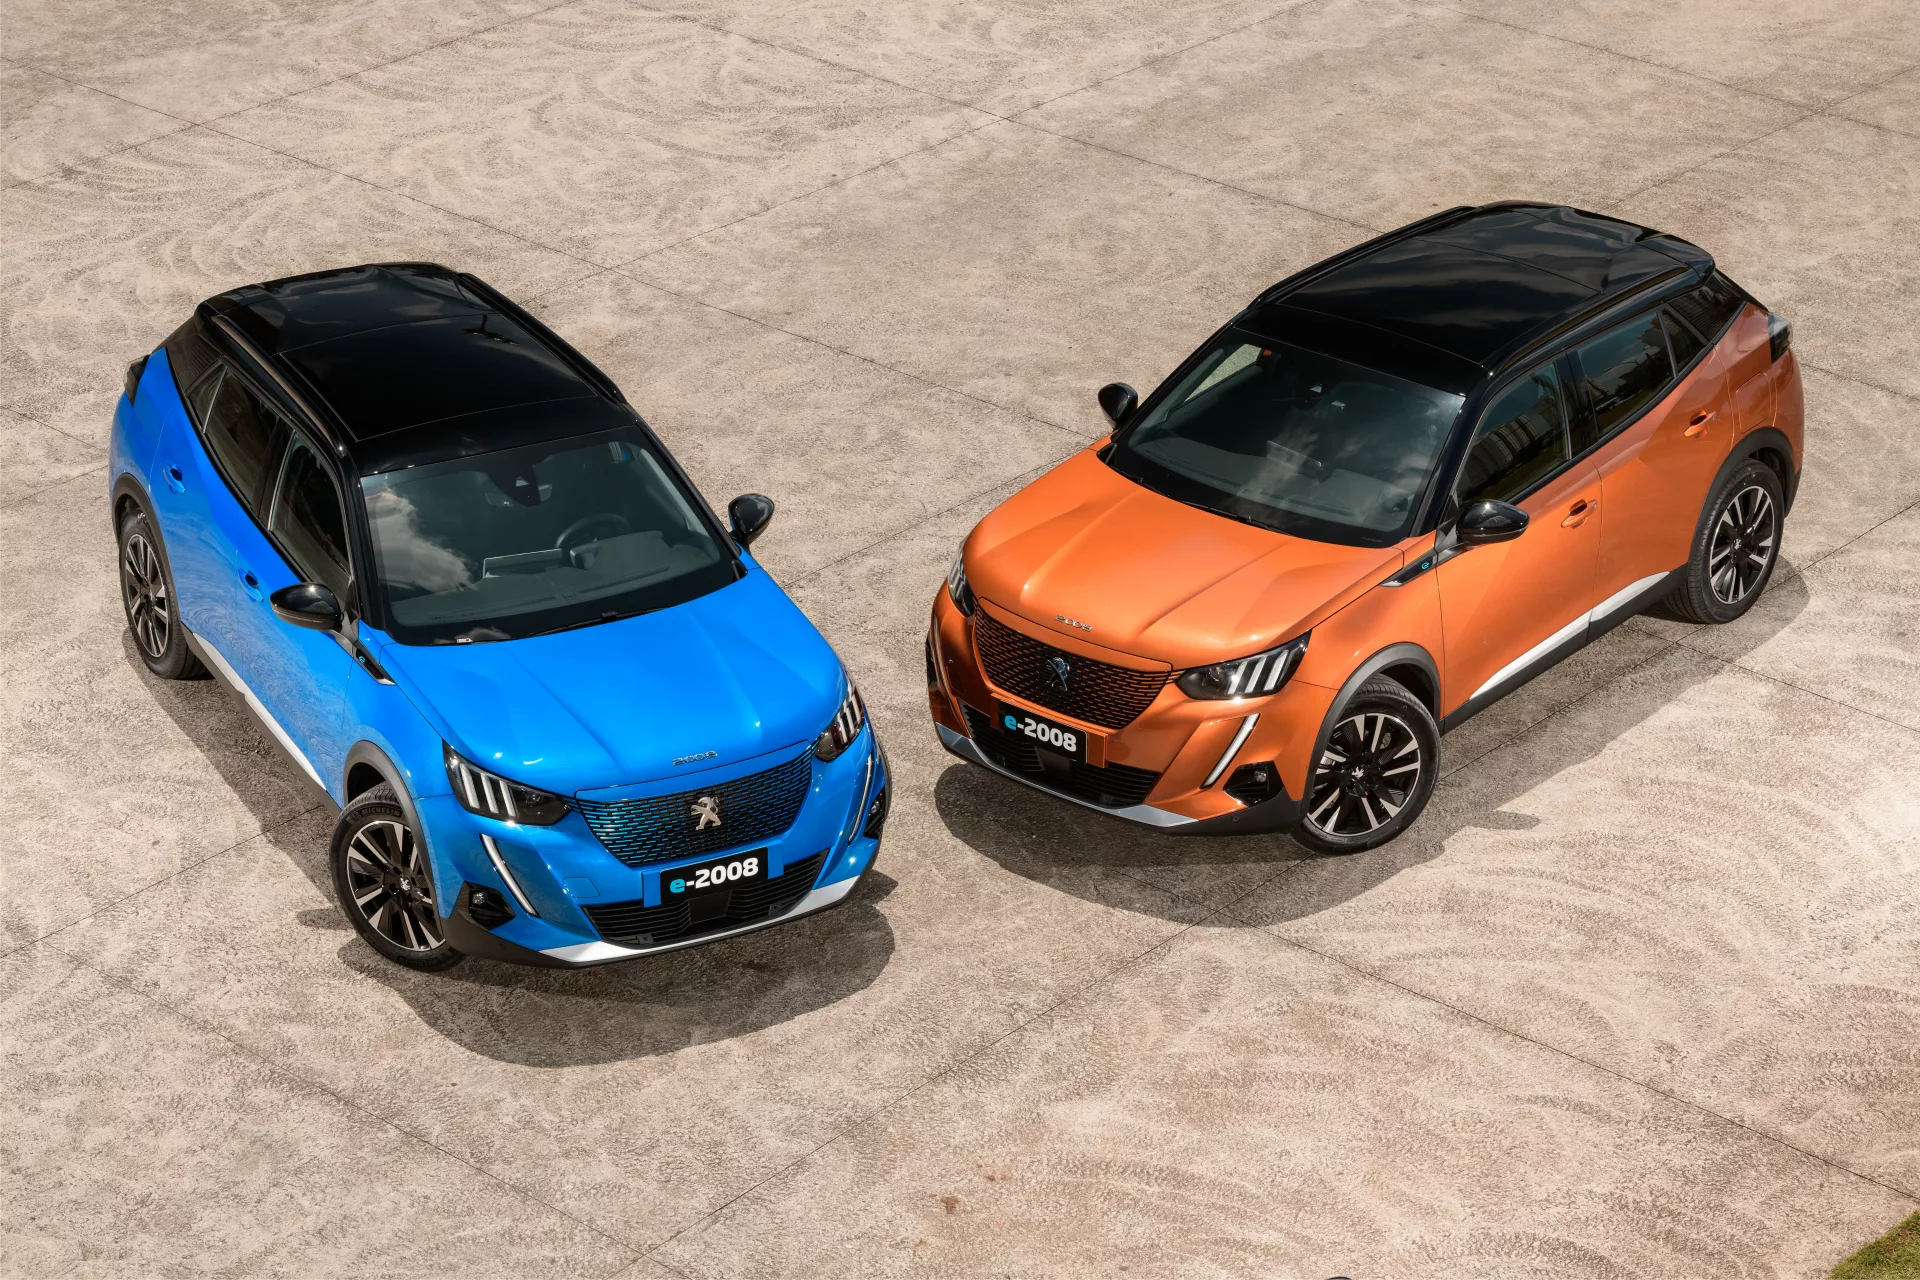 Dois carros elétricos da Peugeot, o modelo e-2008, nas cores azul e laranja